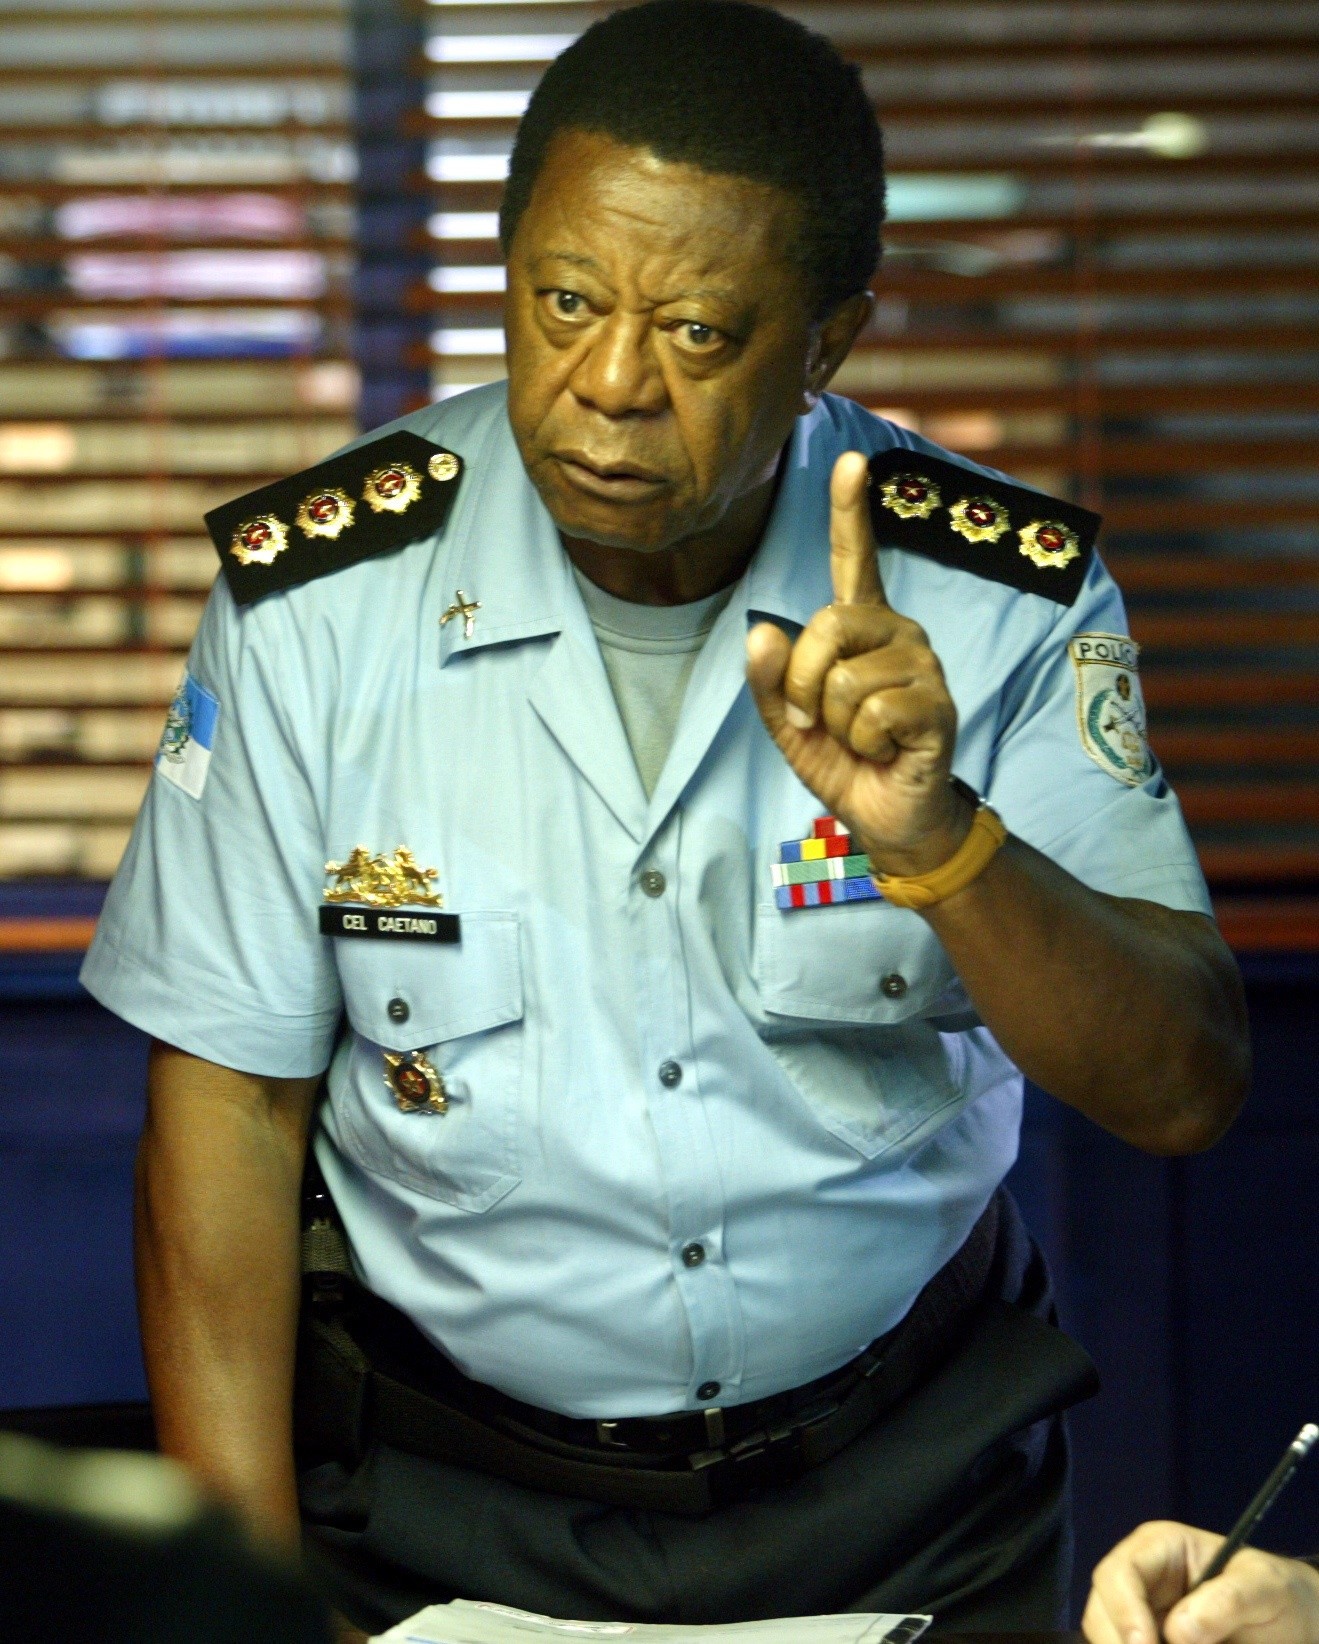 Milton Gonçalves no seriado policial "Força Tarefa", de 2009  — Foto: Fábio Rossi / Agência O Globo